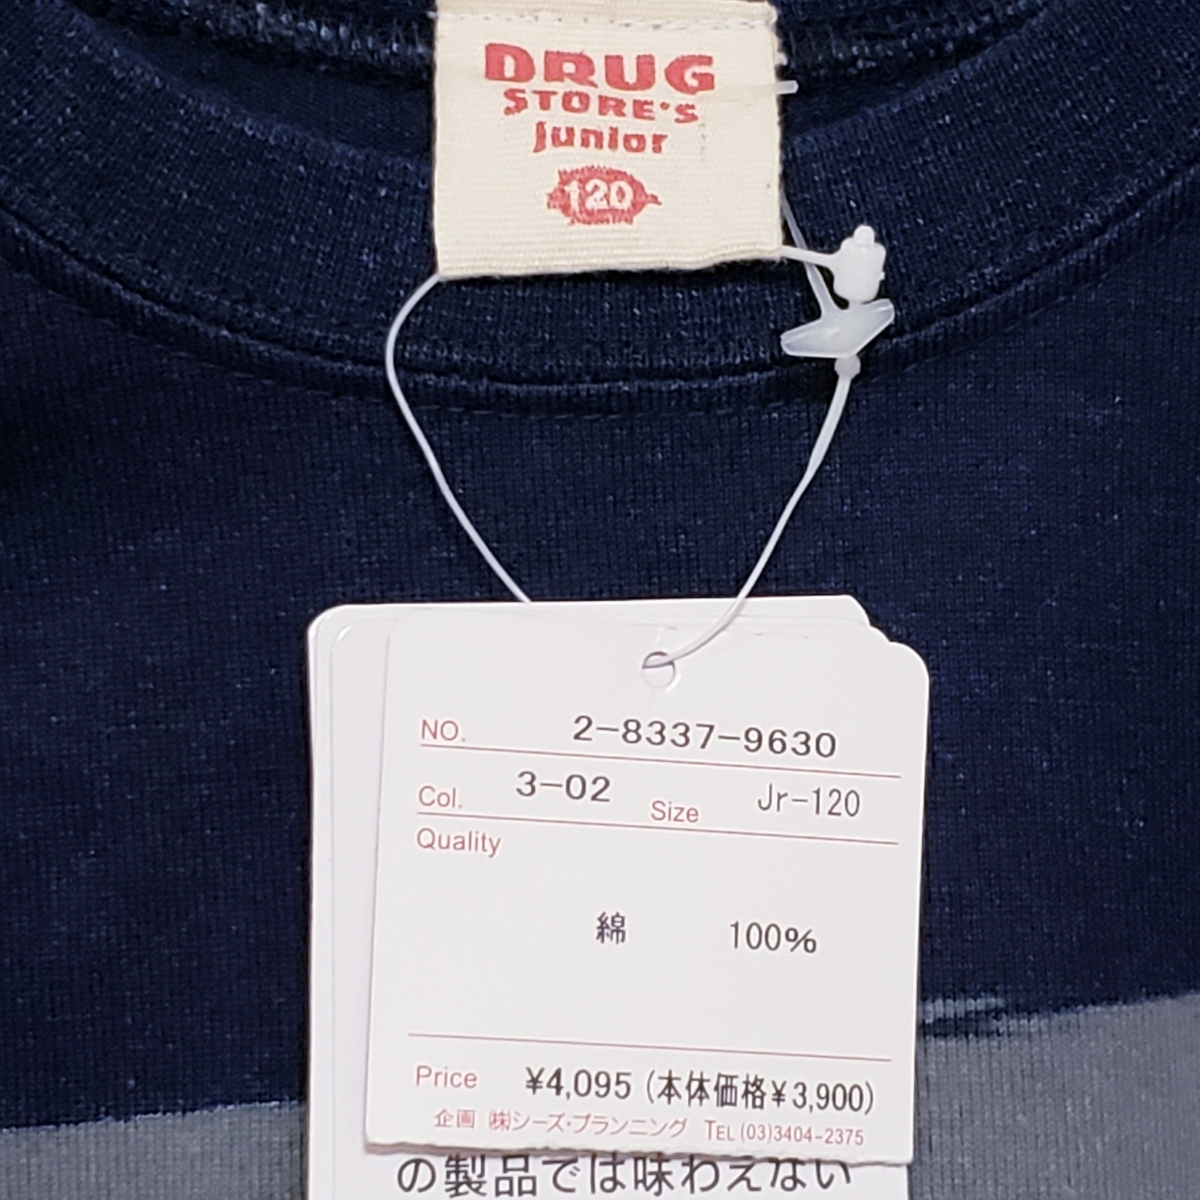   блиц-цена   новый товар  бирка есть   ... магазин ... 120  футболка   рекомендуемая розничная цена 4095  йен  ... и ...